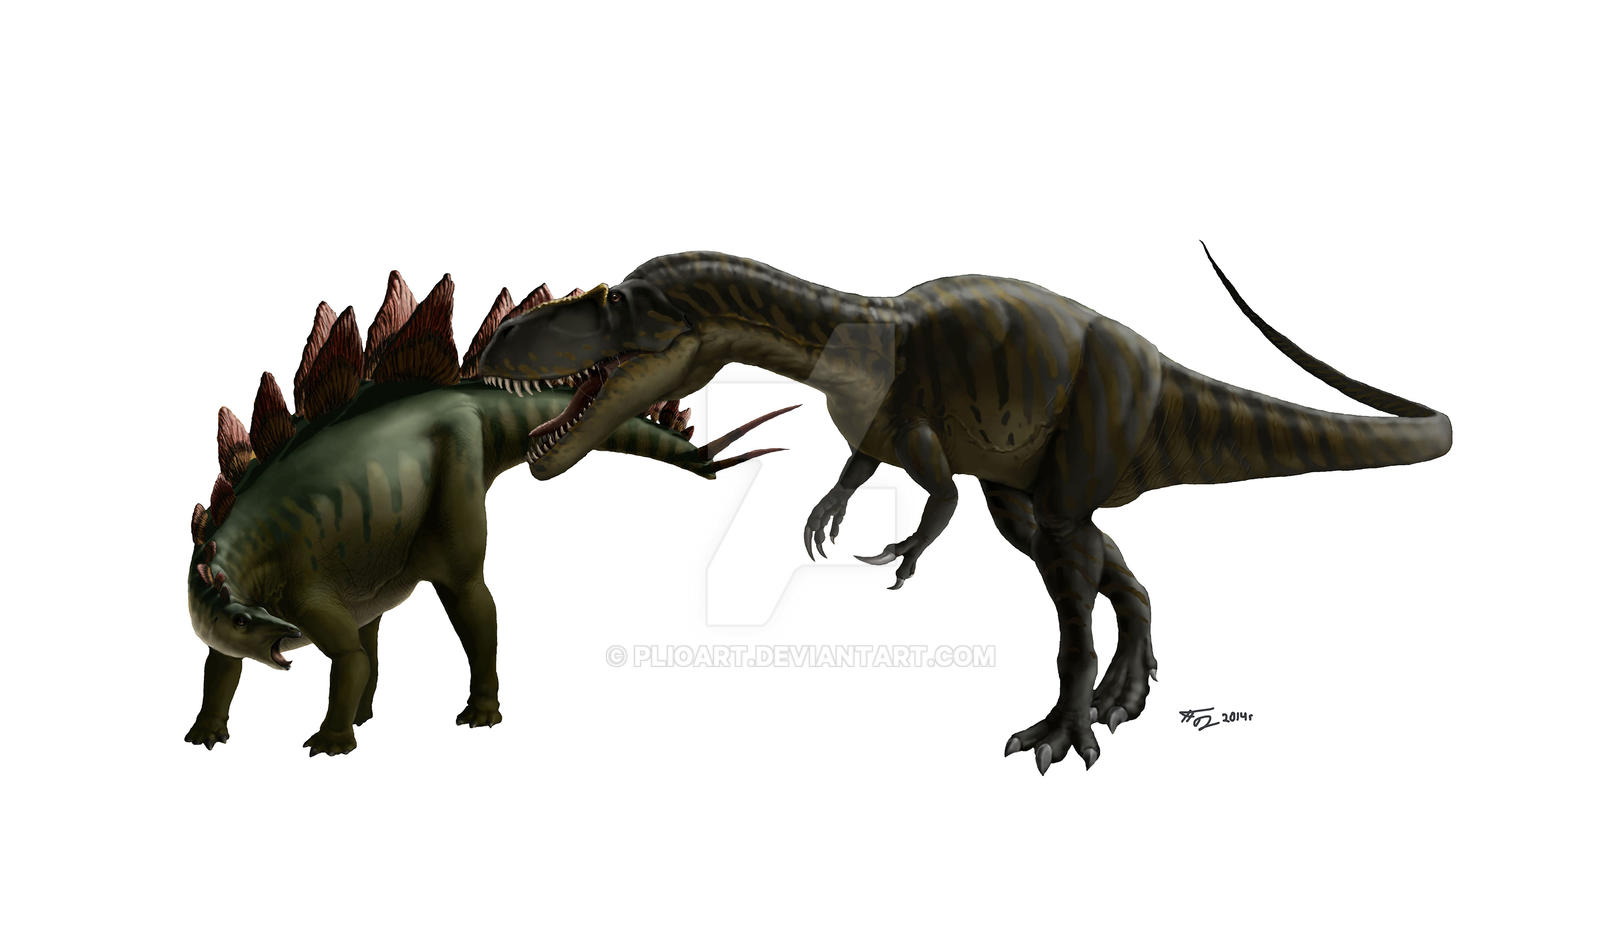 Resultado de imagen para torvosaurus vs dryosaurus